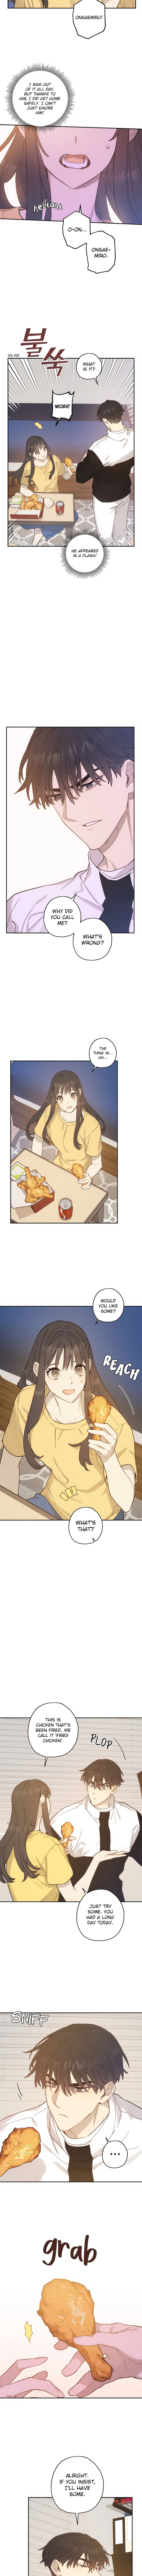 Onsaemiro - Chapter 15 Page 7